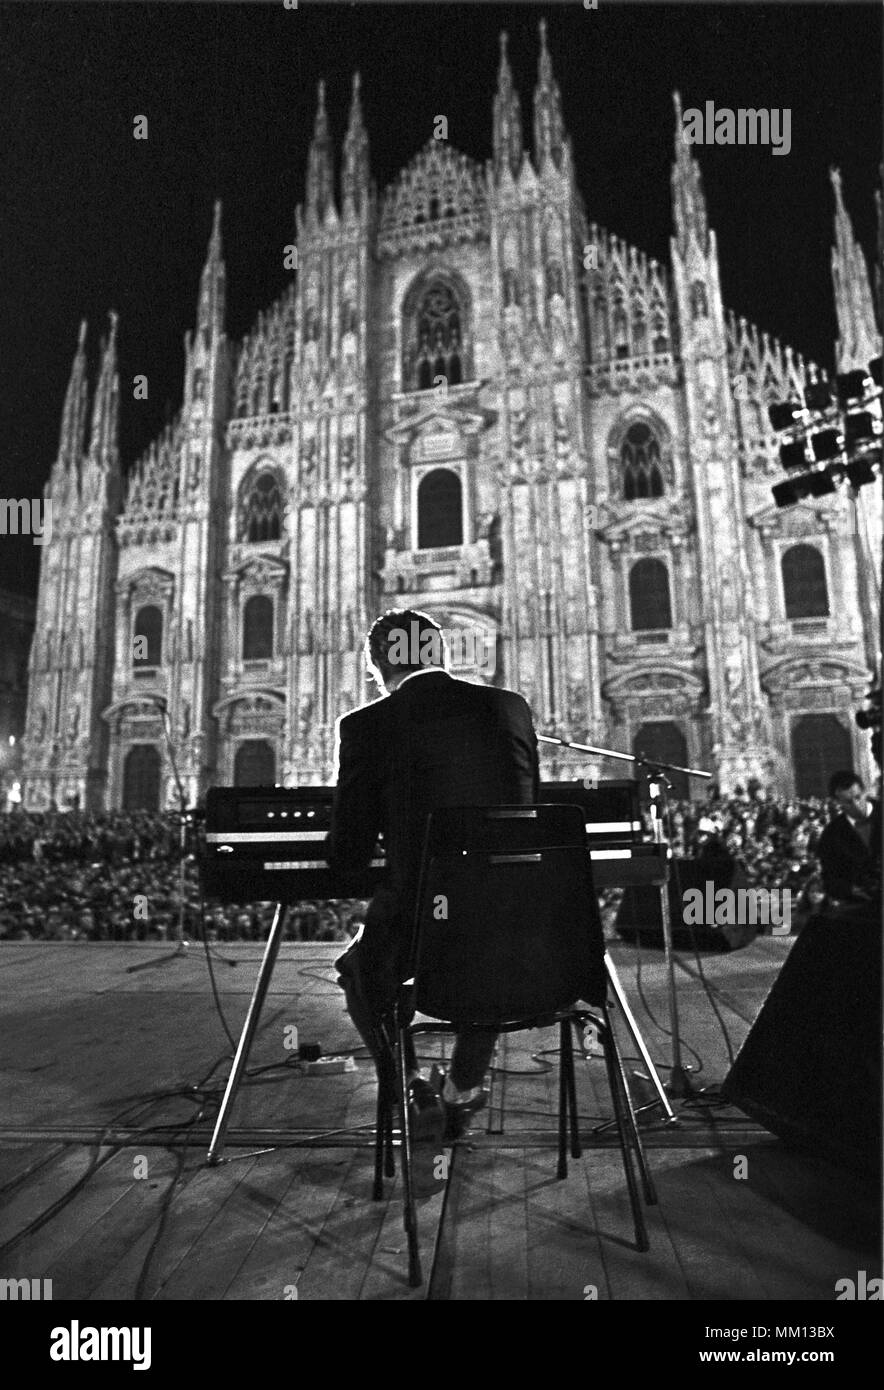 Il musicista e canzone scrittore Enzo Jannacci durante un pubblico spettacolo a Milano (Italia), Settembre 1986 Foto Stock